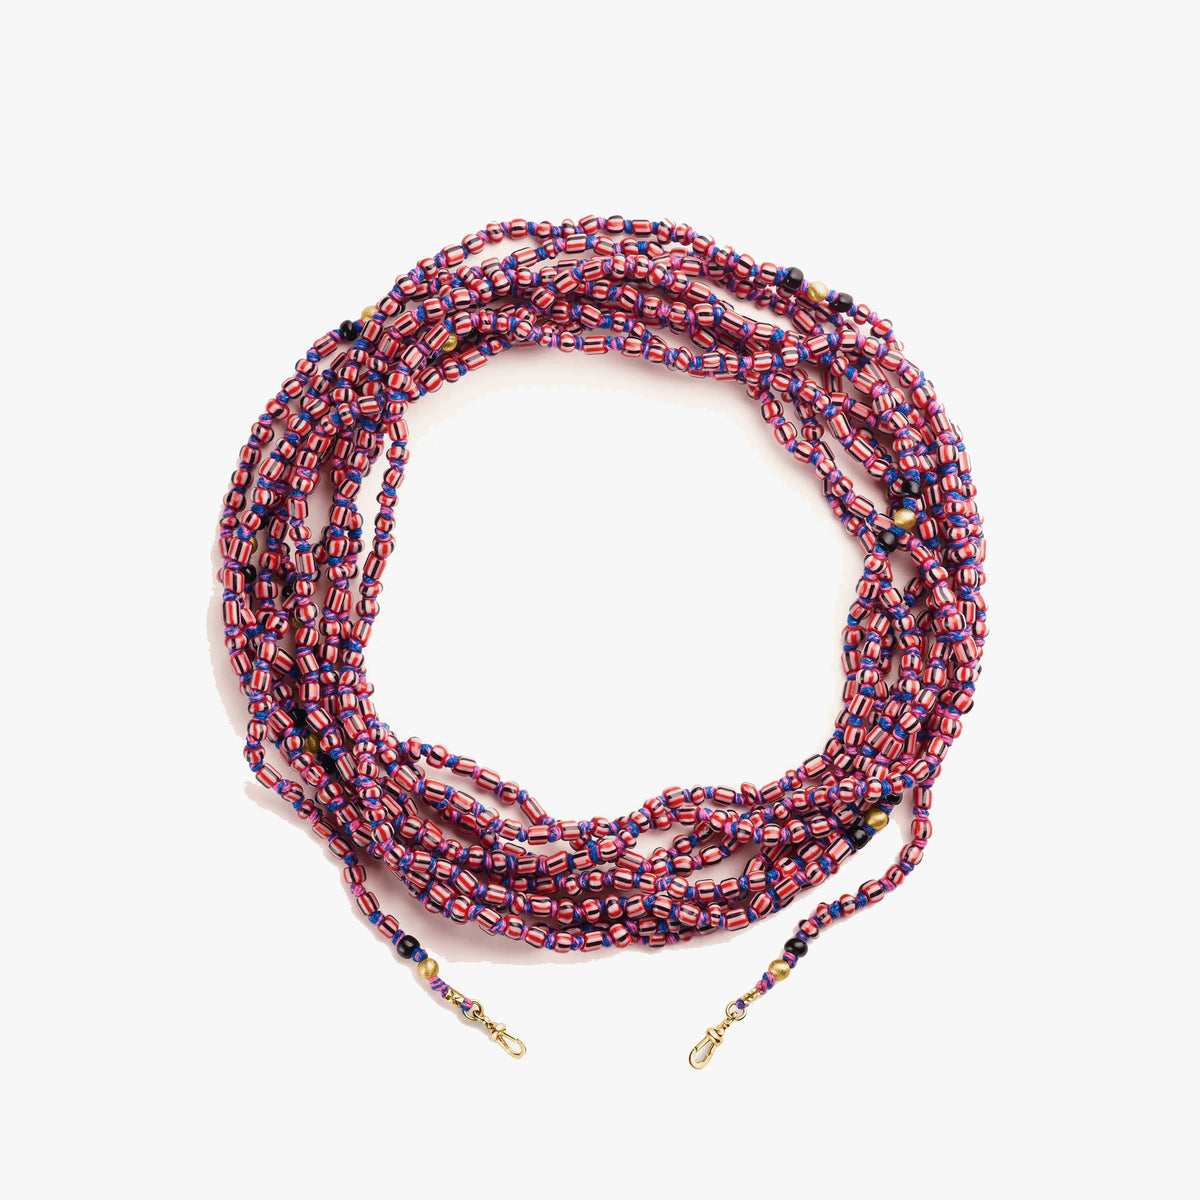 Pink and black Ghana Mauli beads